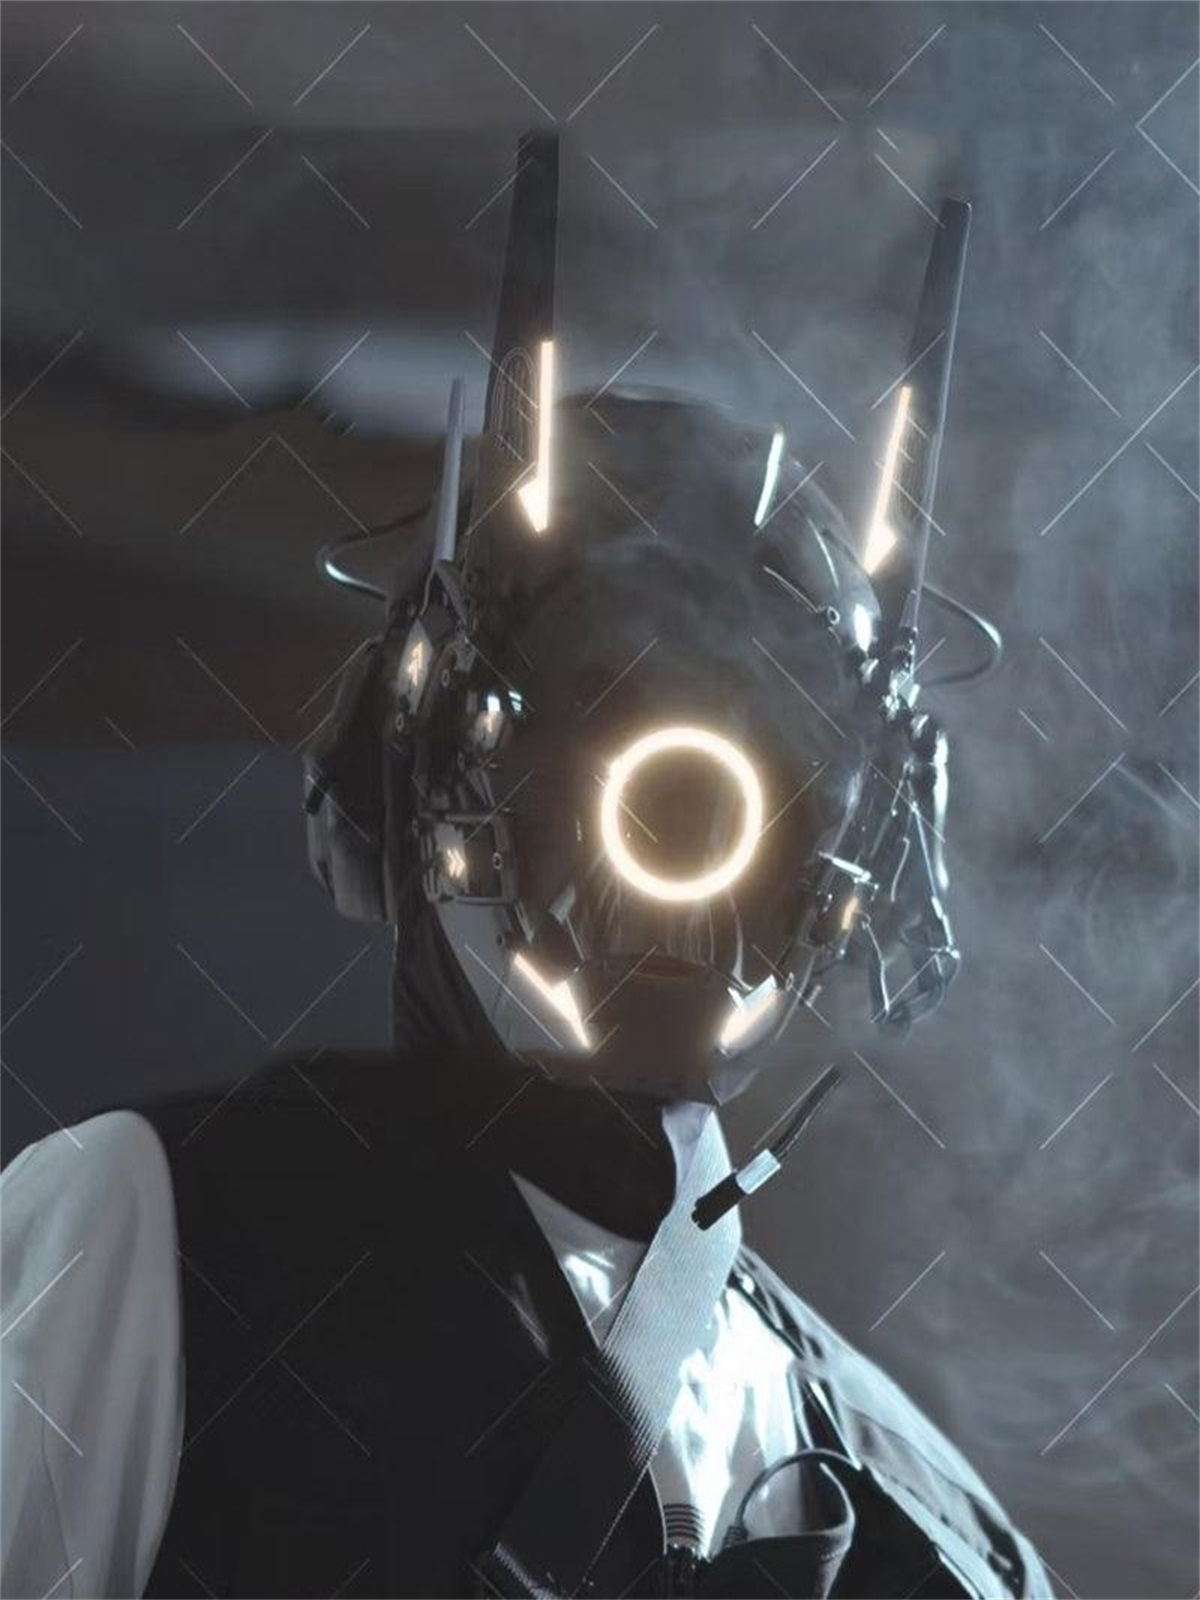 [Advanced Series] Cyberpunk Glowing Circle Mask